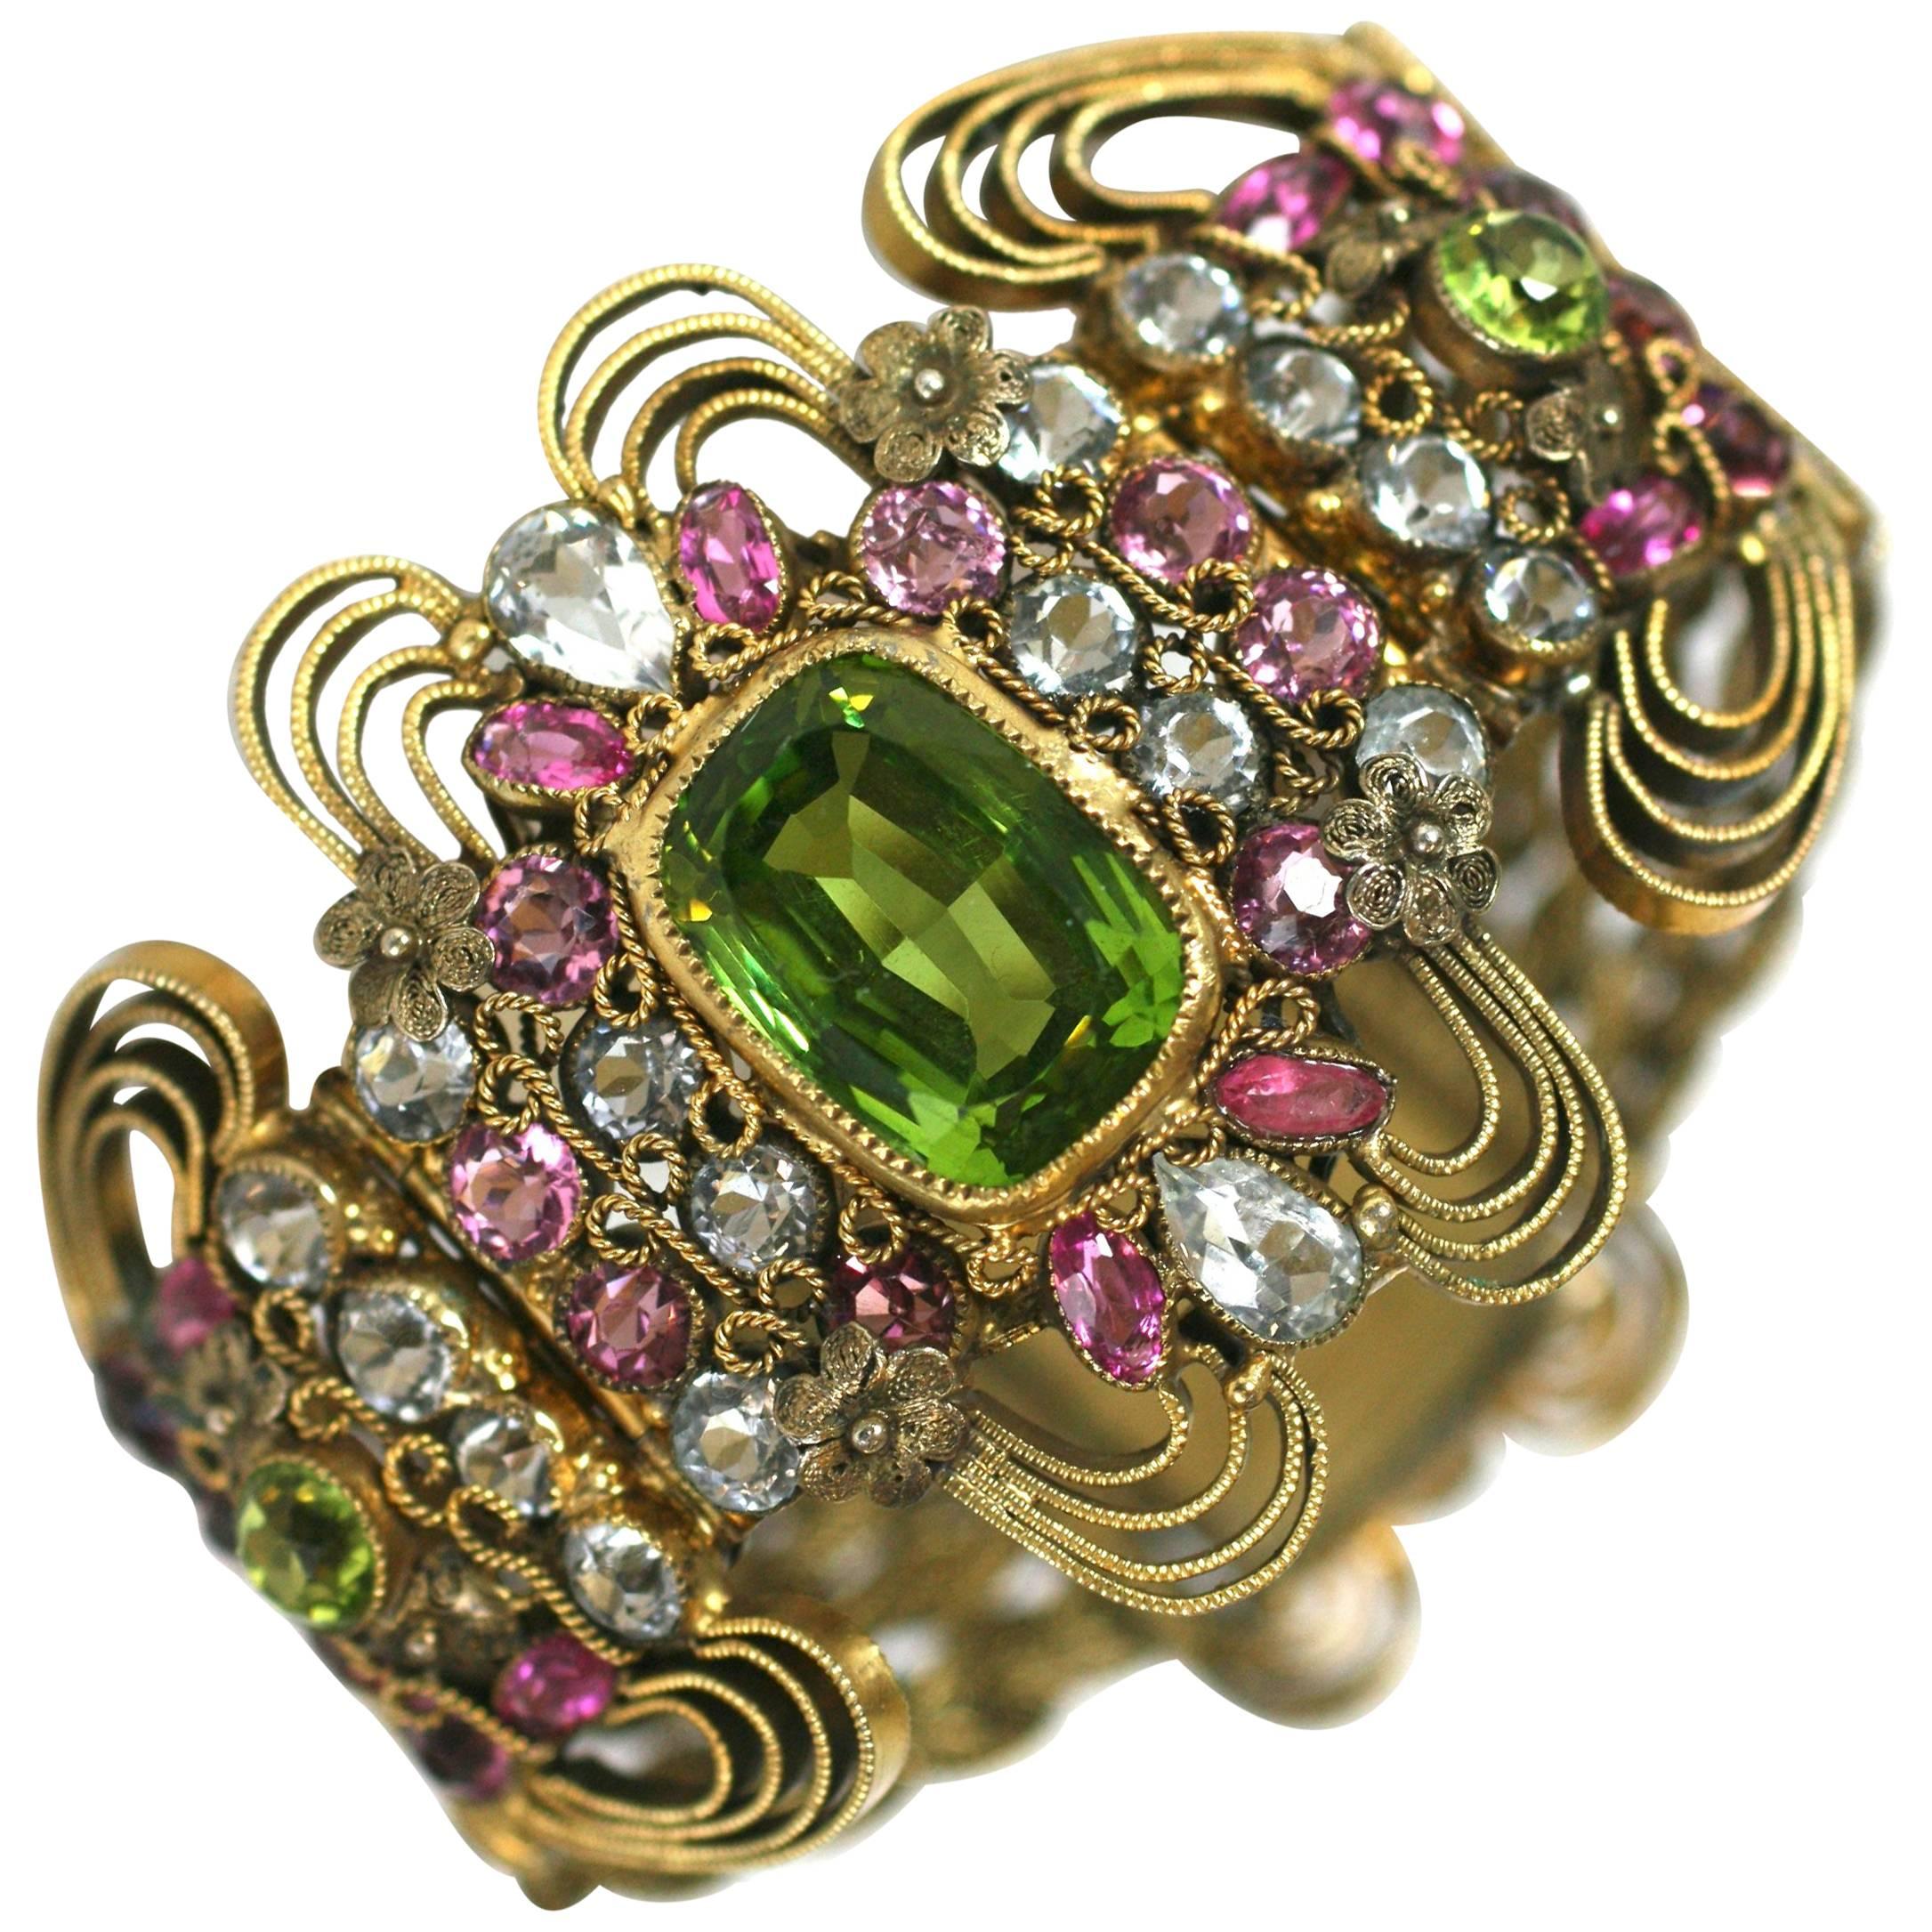 Elaborate Jeweled Hobe Bracelet